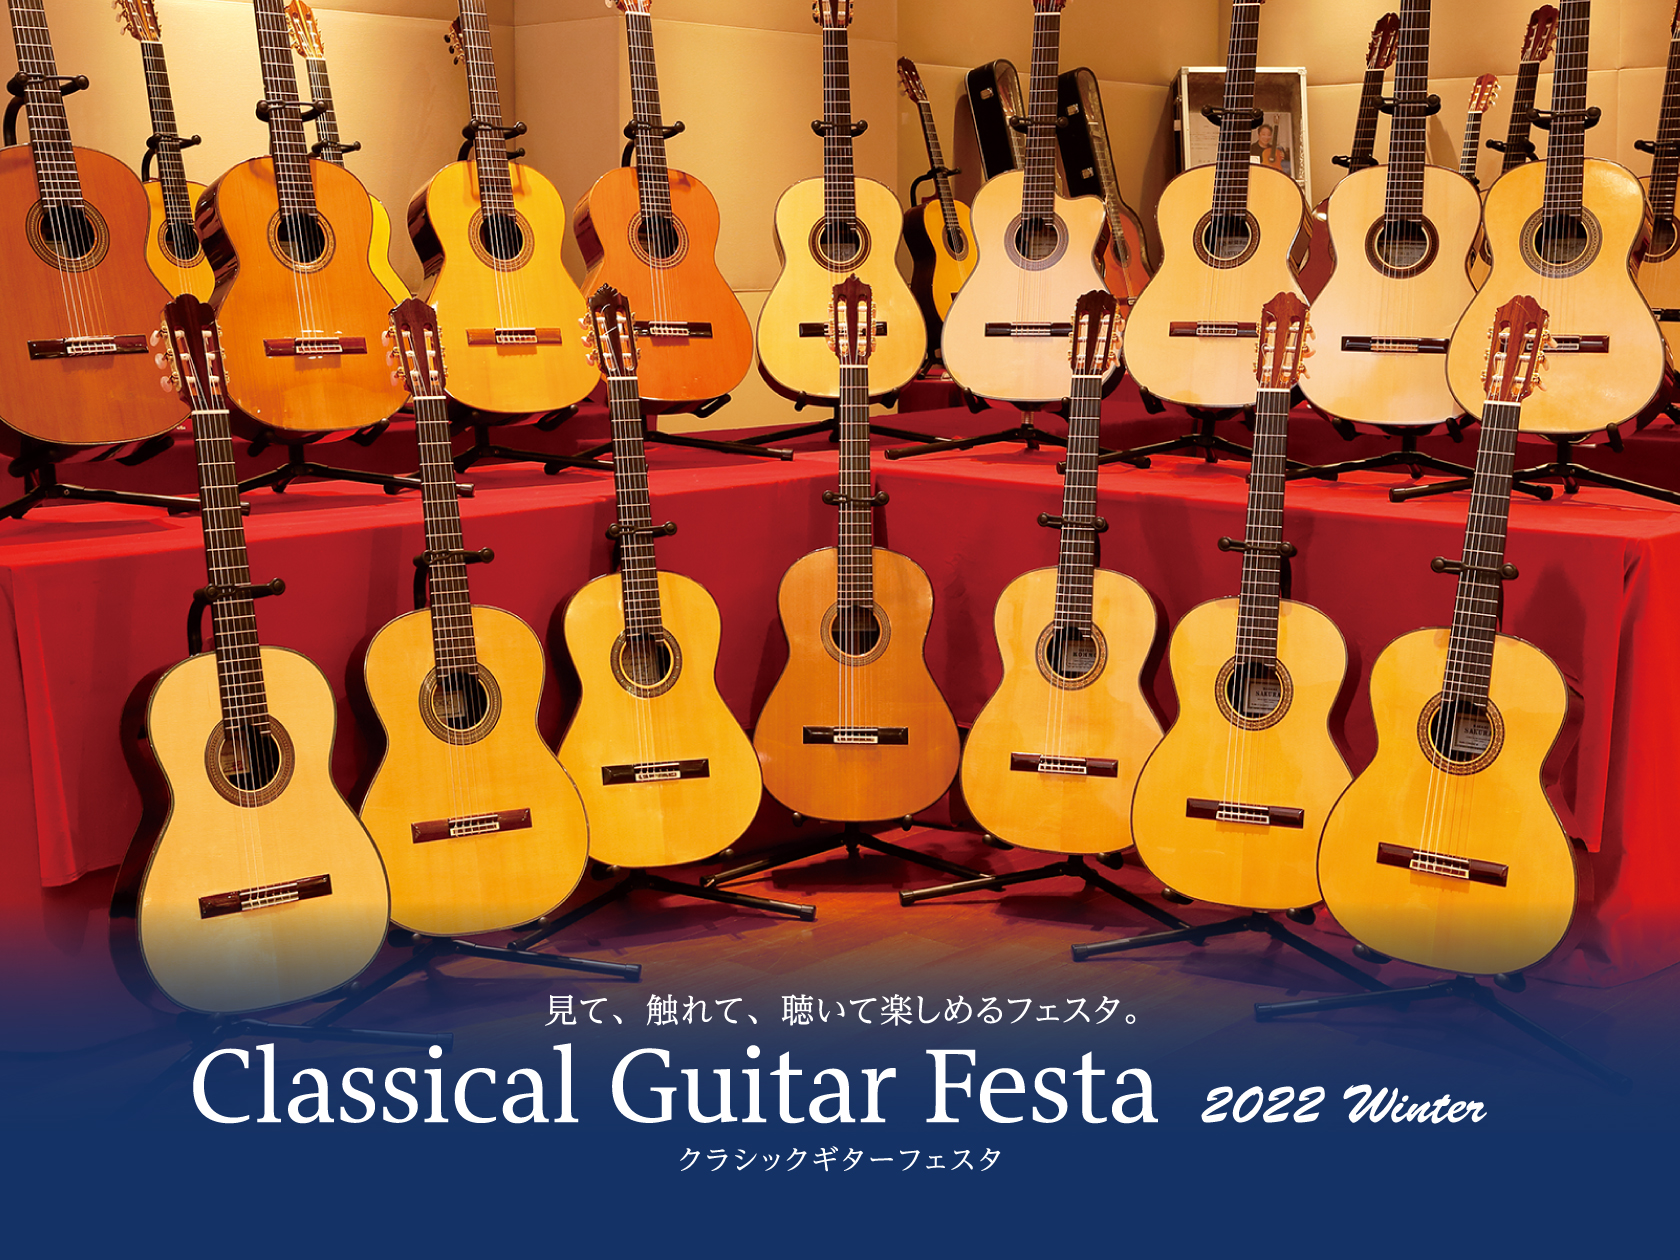 クラシックギターの祭典！クラシックギターフェスタが今冬も磐田にやってくる！ 毎年夏に開催しておりますクラシックギターフェスタ。昨年から冬も開催するようになりました！今回も1月にクラシックギターフェスタin磐田を開催致します！！魅力的なギター展示はもちろん、イベントも盛りだくさん。こちらは事前予約が必 […]